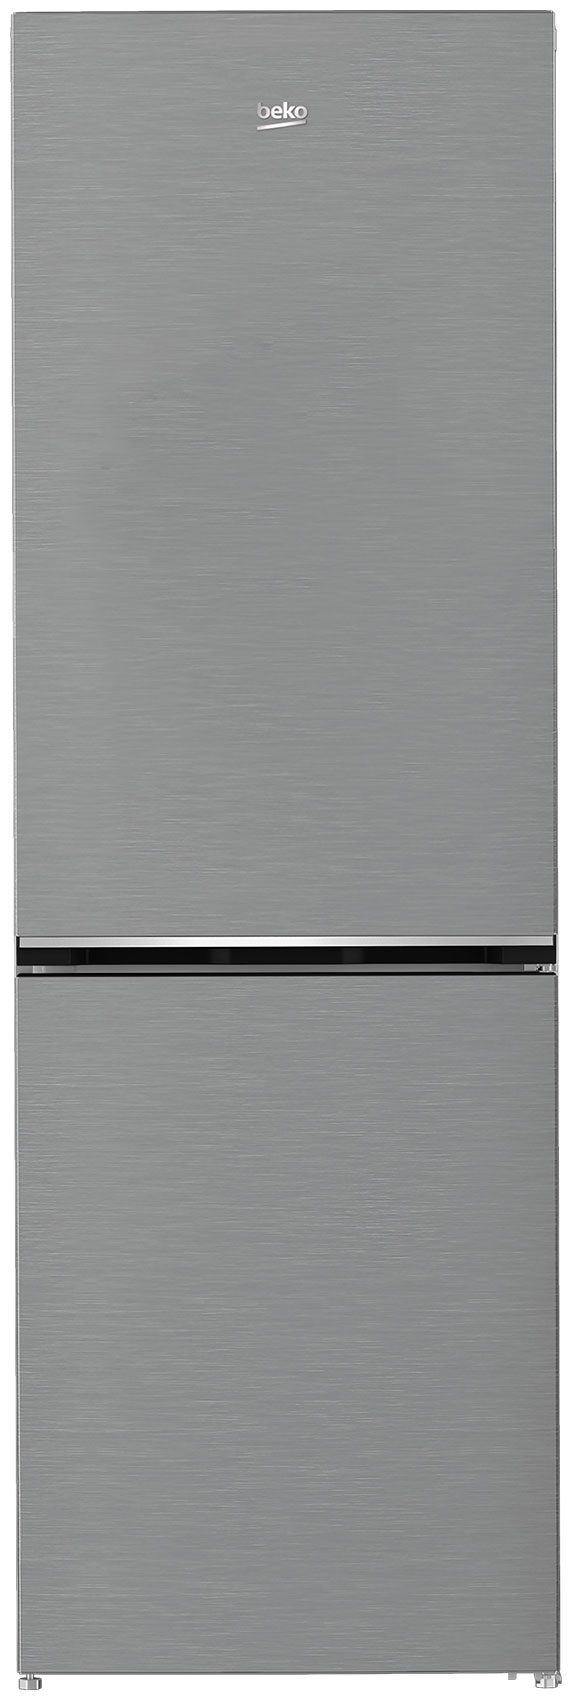 Двухкамерный холодильник Beko B1DRCNK362HX холодильник двухкамерный beko rcnk310kc0w 184x60x54см 1 компрессор цвет белый